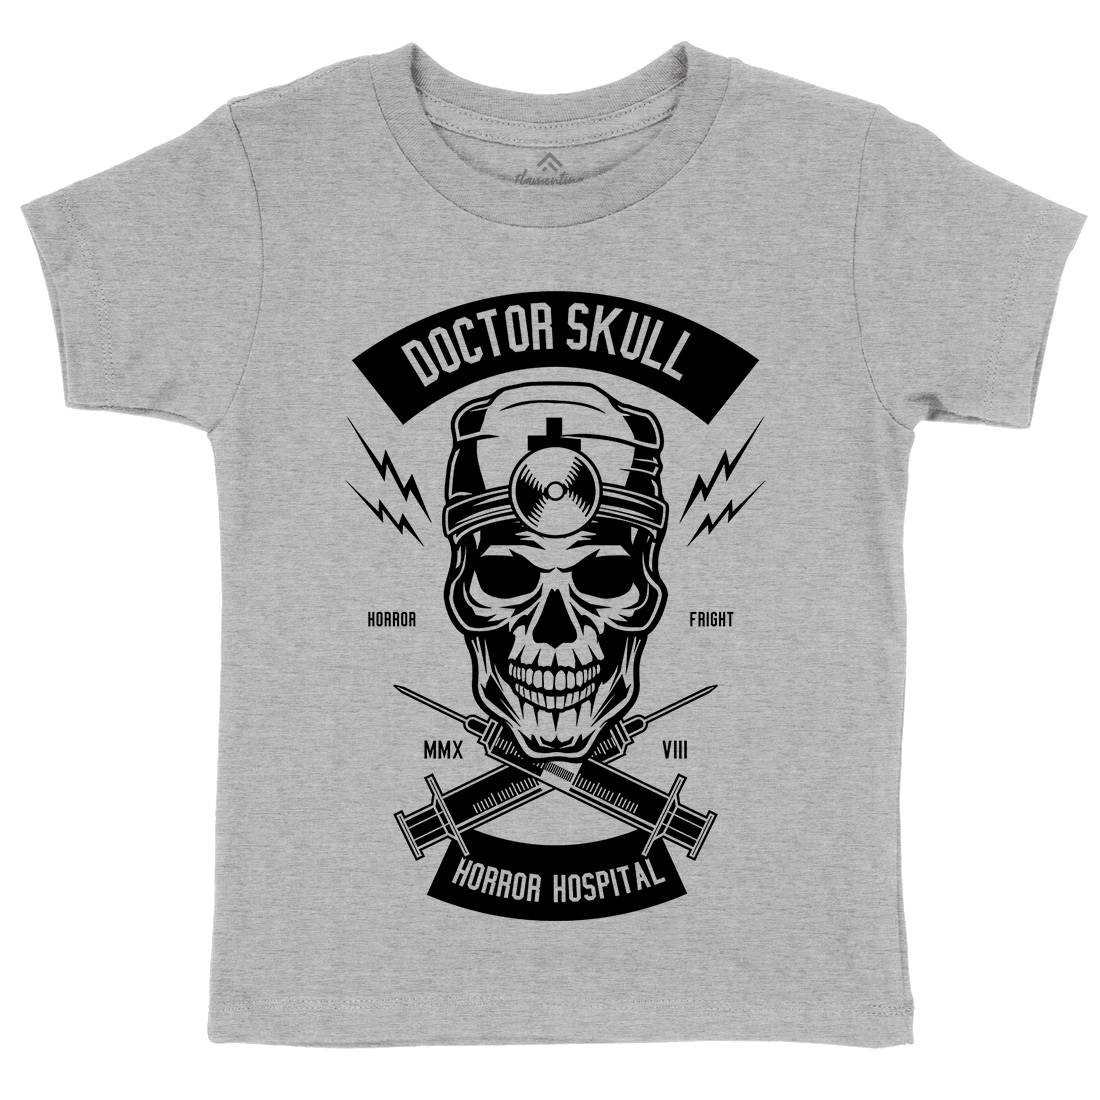 Doctor Skull Kids Organic Crew Neck T-Shirt Horror B533